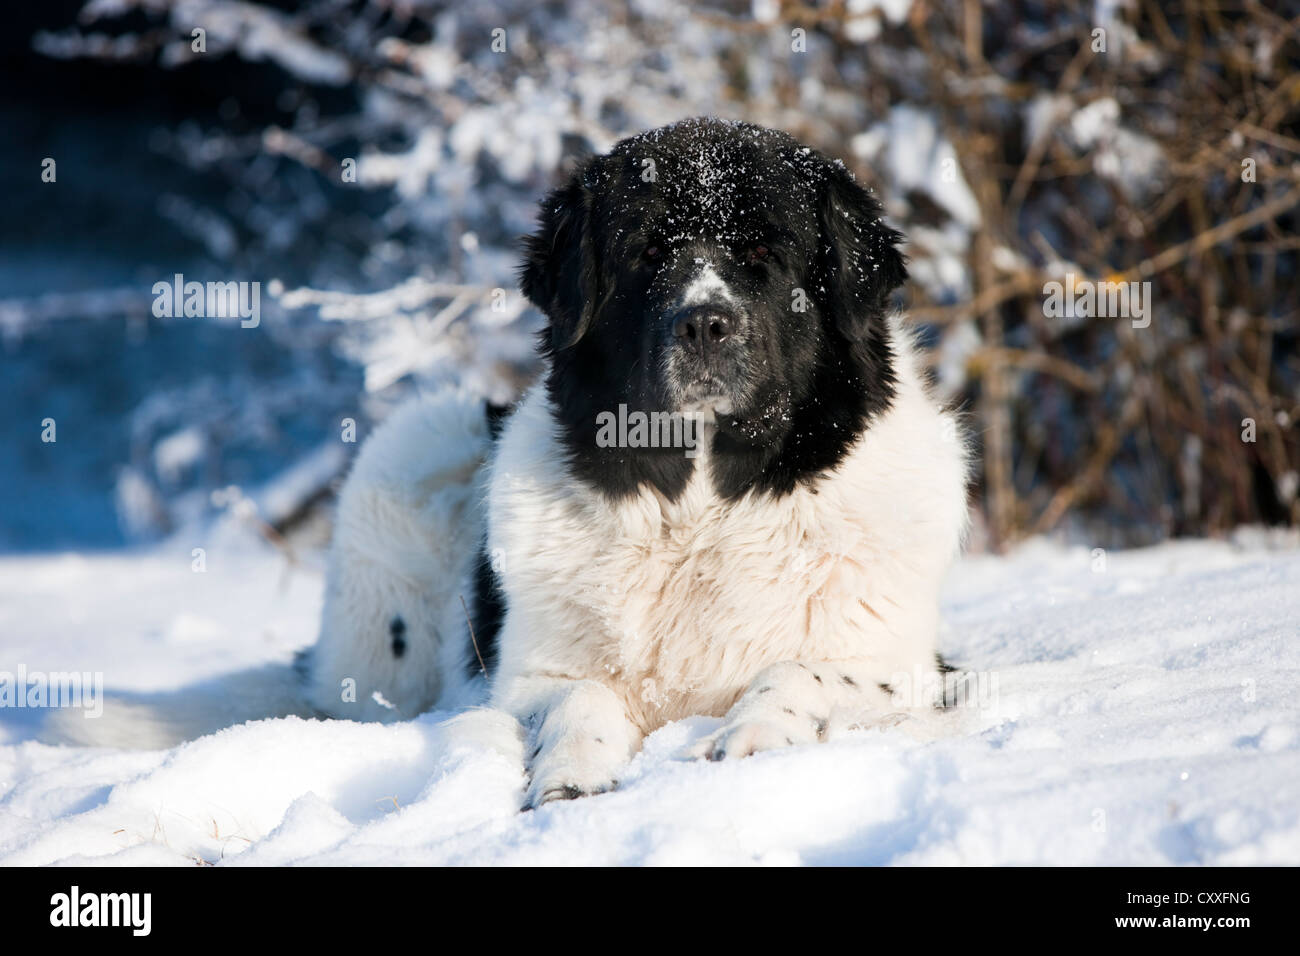 Terre-neuve chien couché dans la neige, Tyrol du Nord, l'Autriche, Europe Banque D'Images